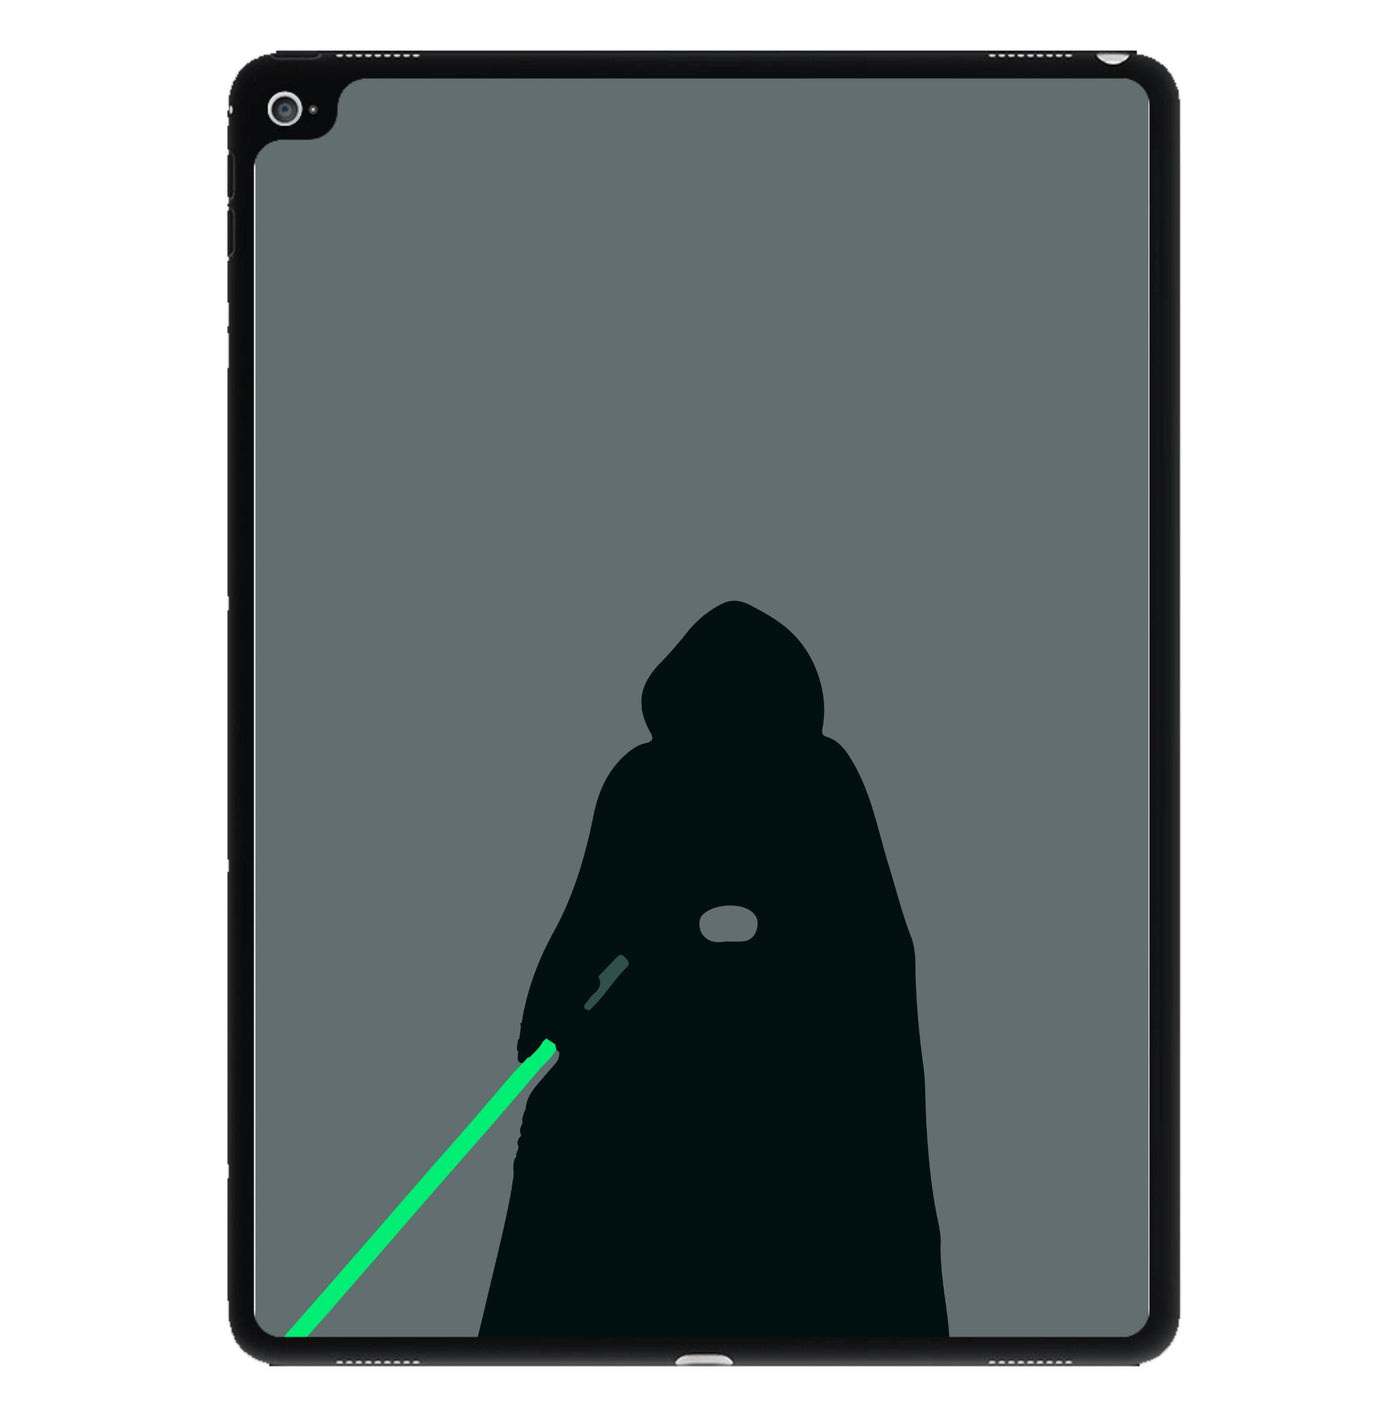 Darth Vader - Star Wars iPad Case